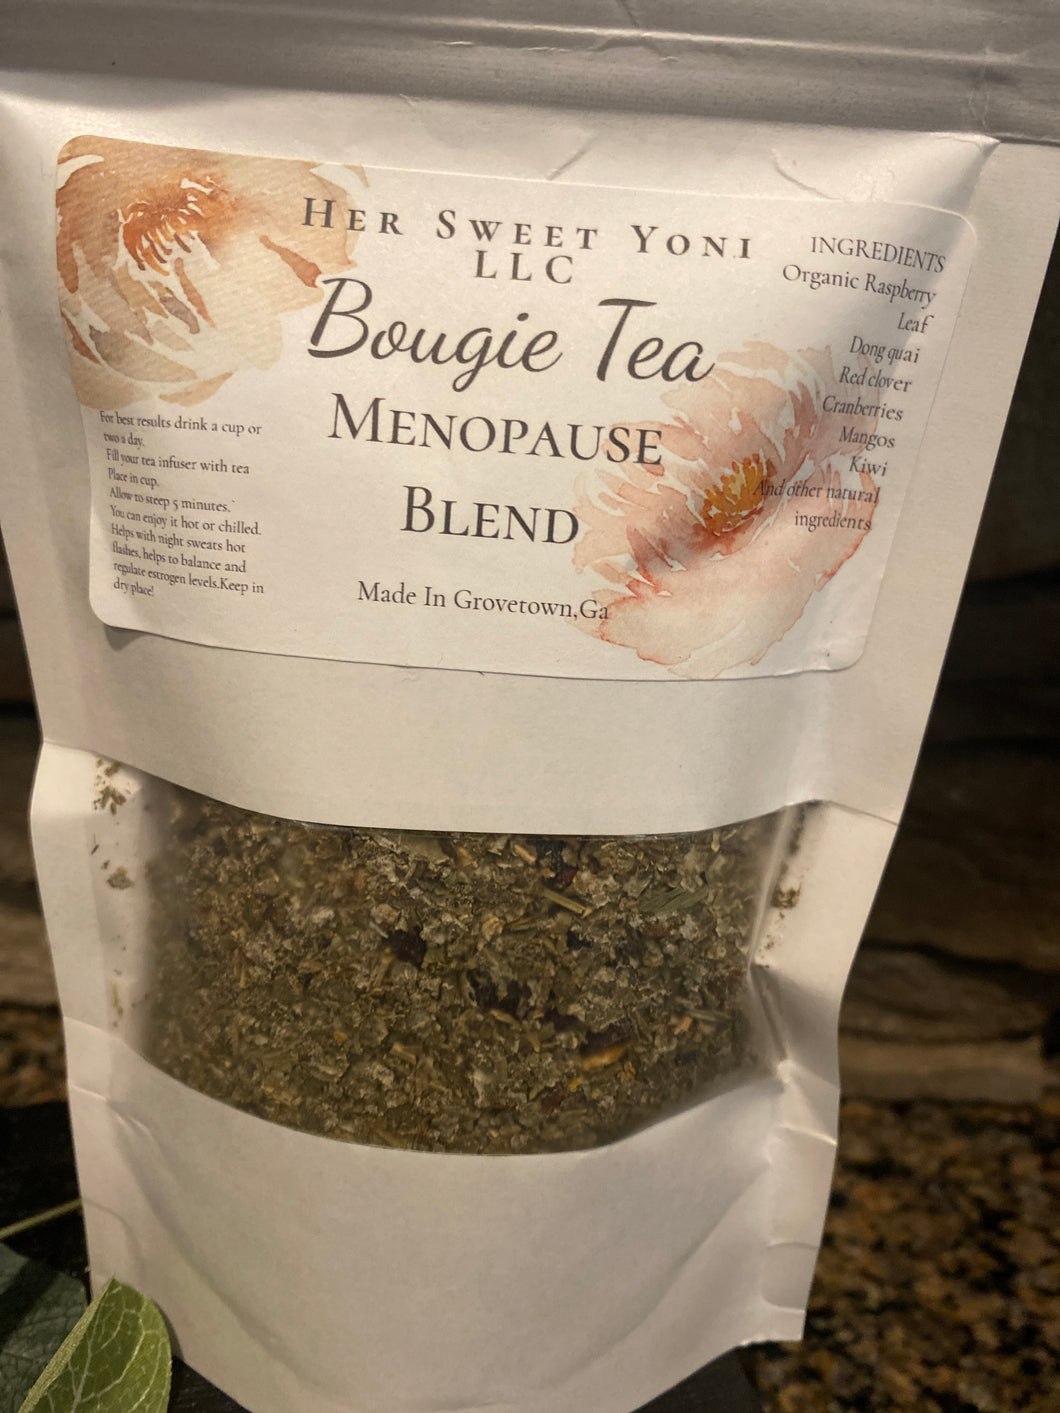 Bougie Tea (Menopause Blend)